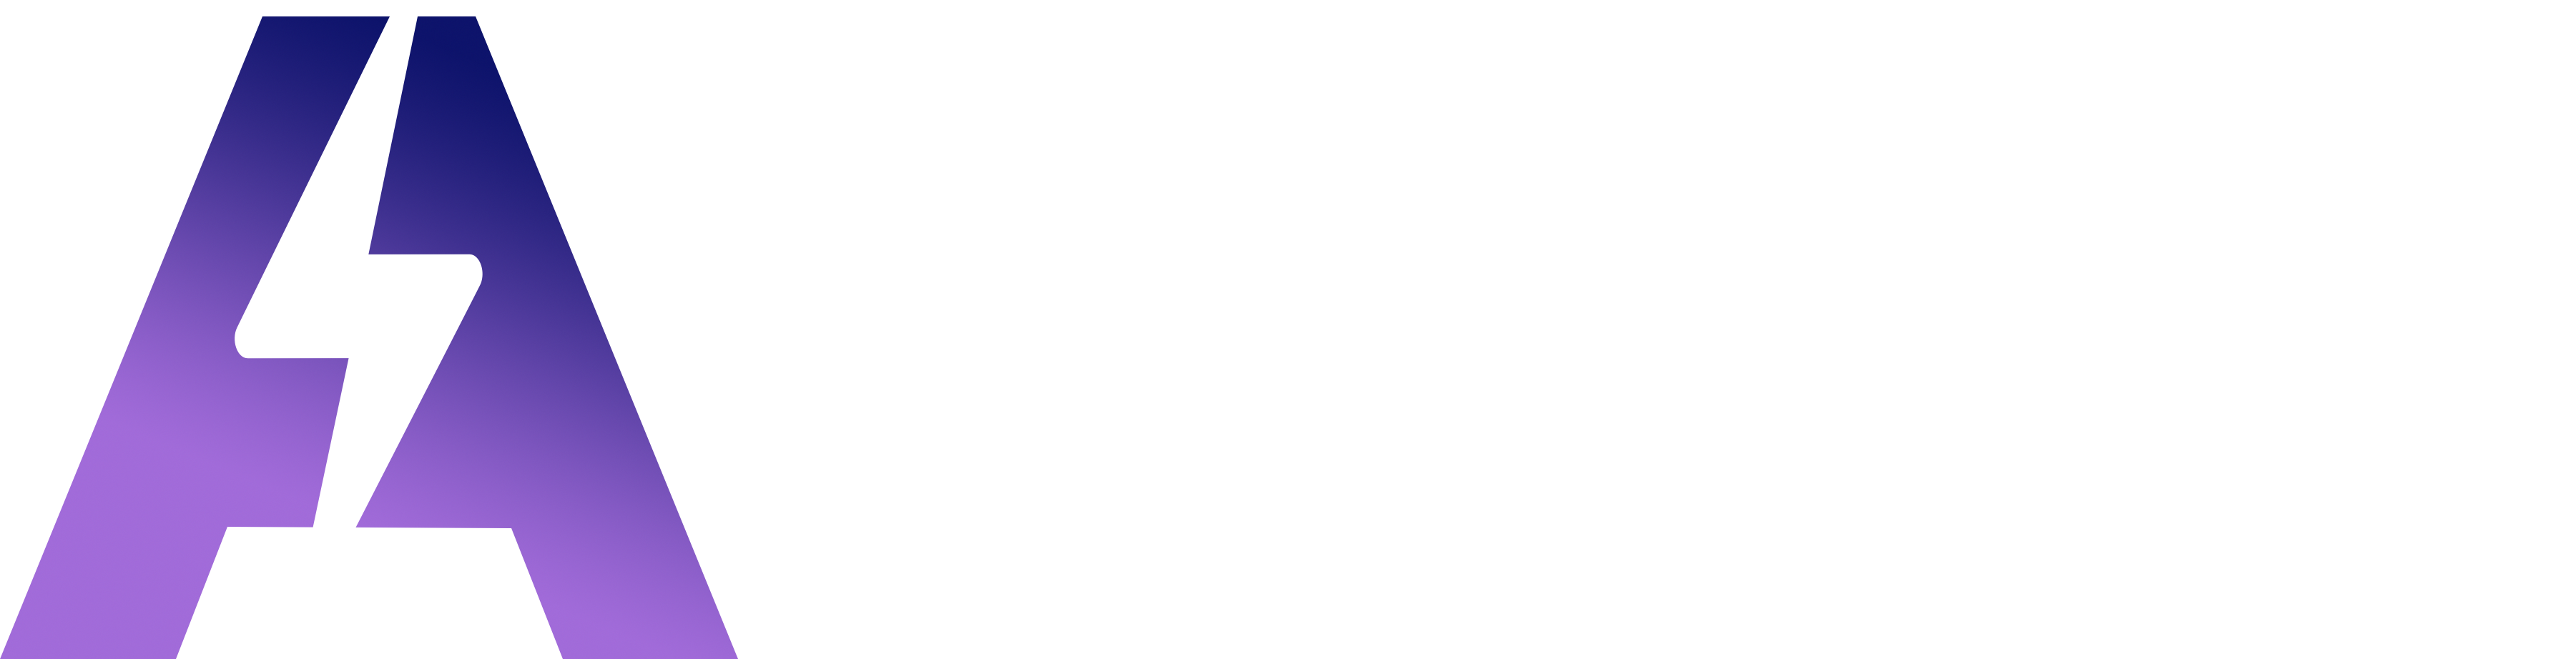 Asekio logotype